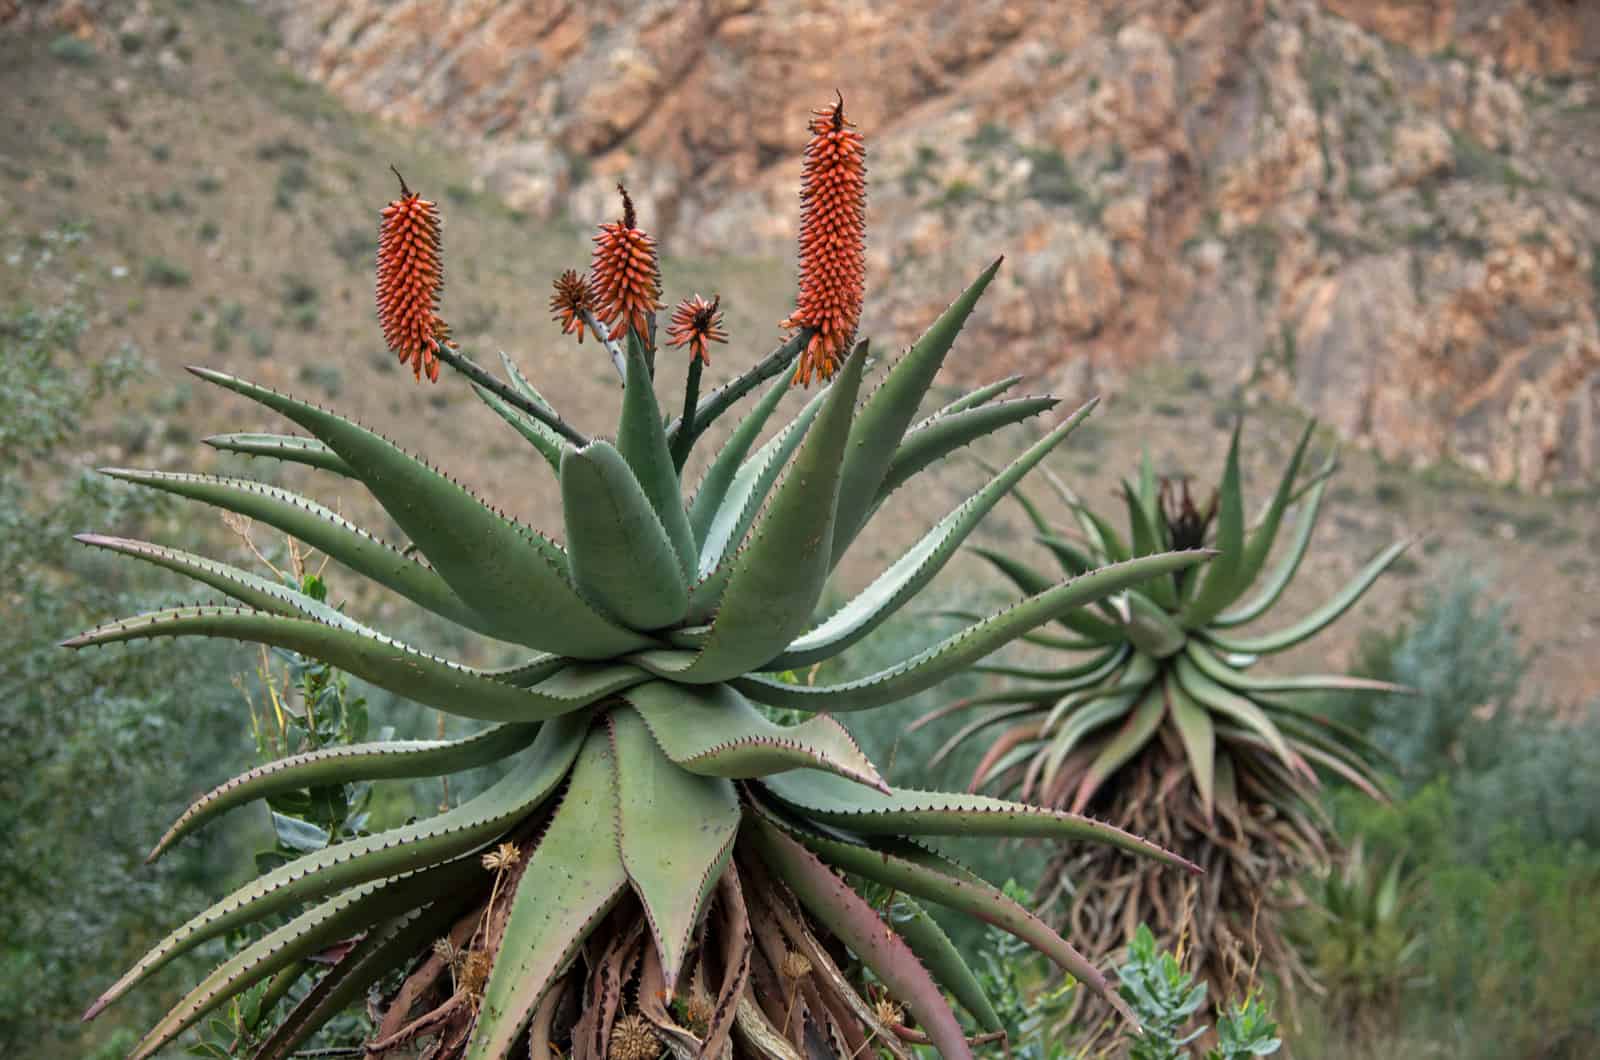 Aloe Ferox outside in nature